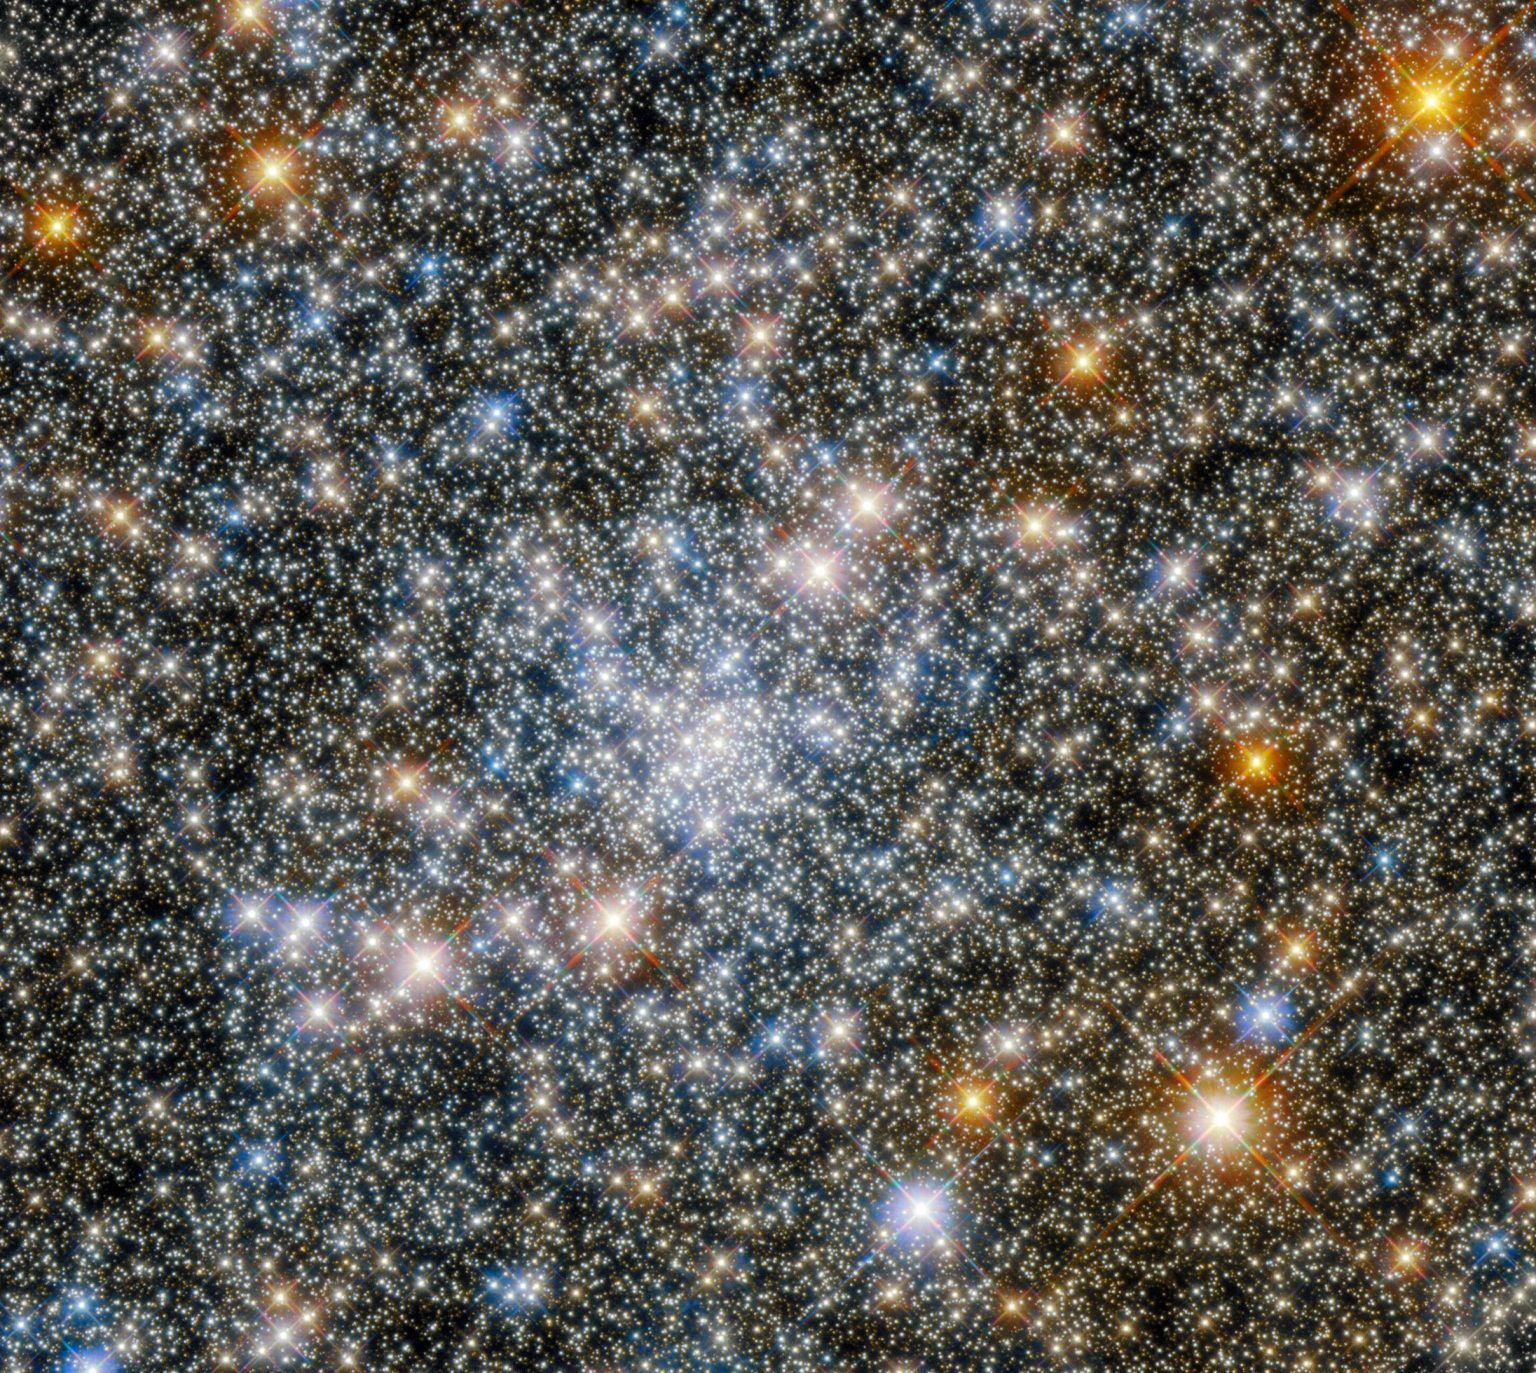 哈勃太空望远镜拍摄的人马座球状星团NGC 6540